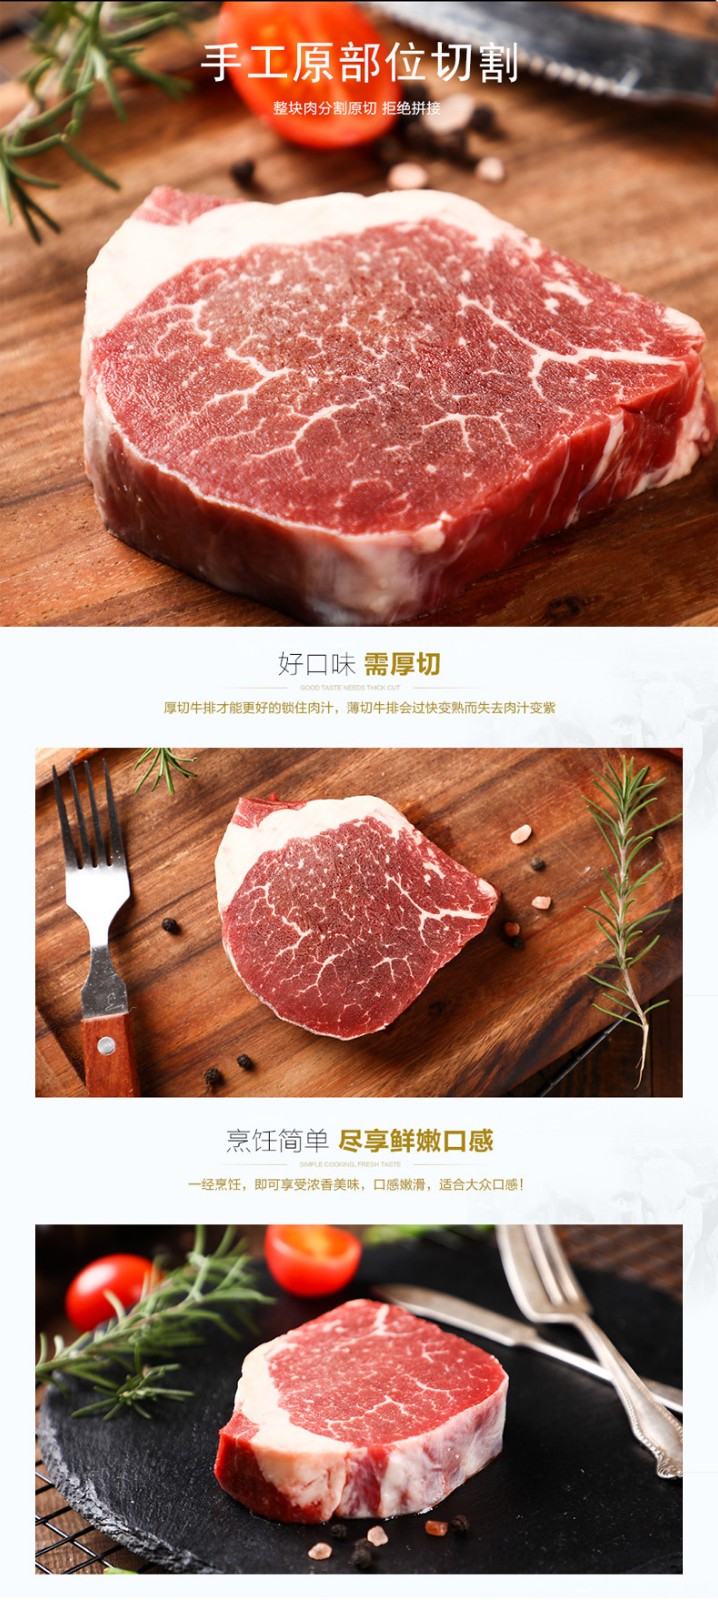 中国代加工牛排项目加盟_代加工牛排报价相关-四川欧牛食品有限公司